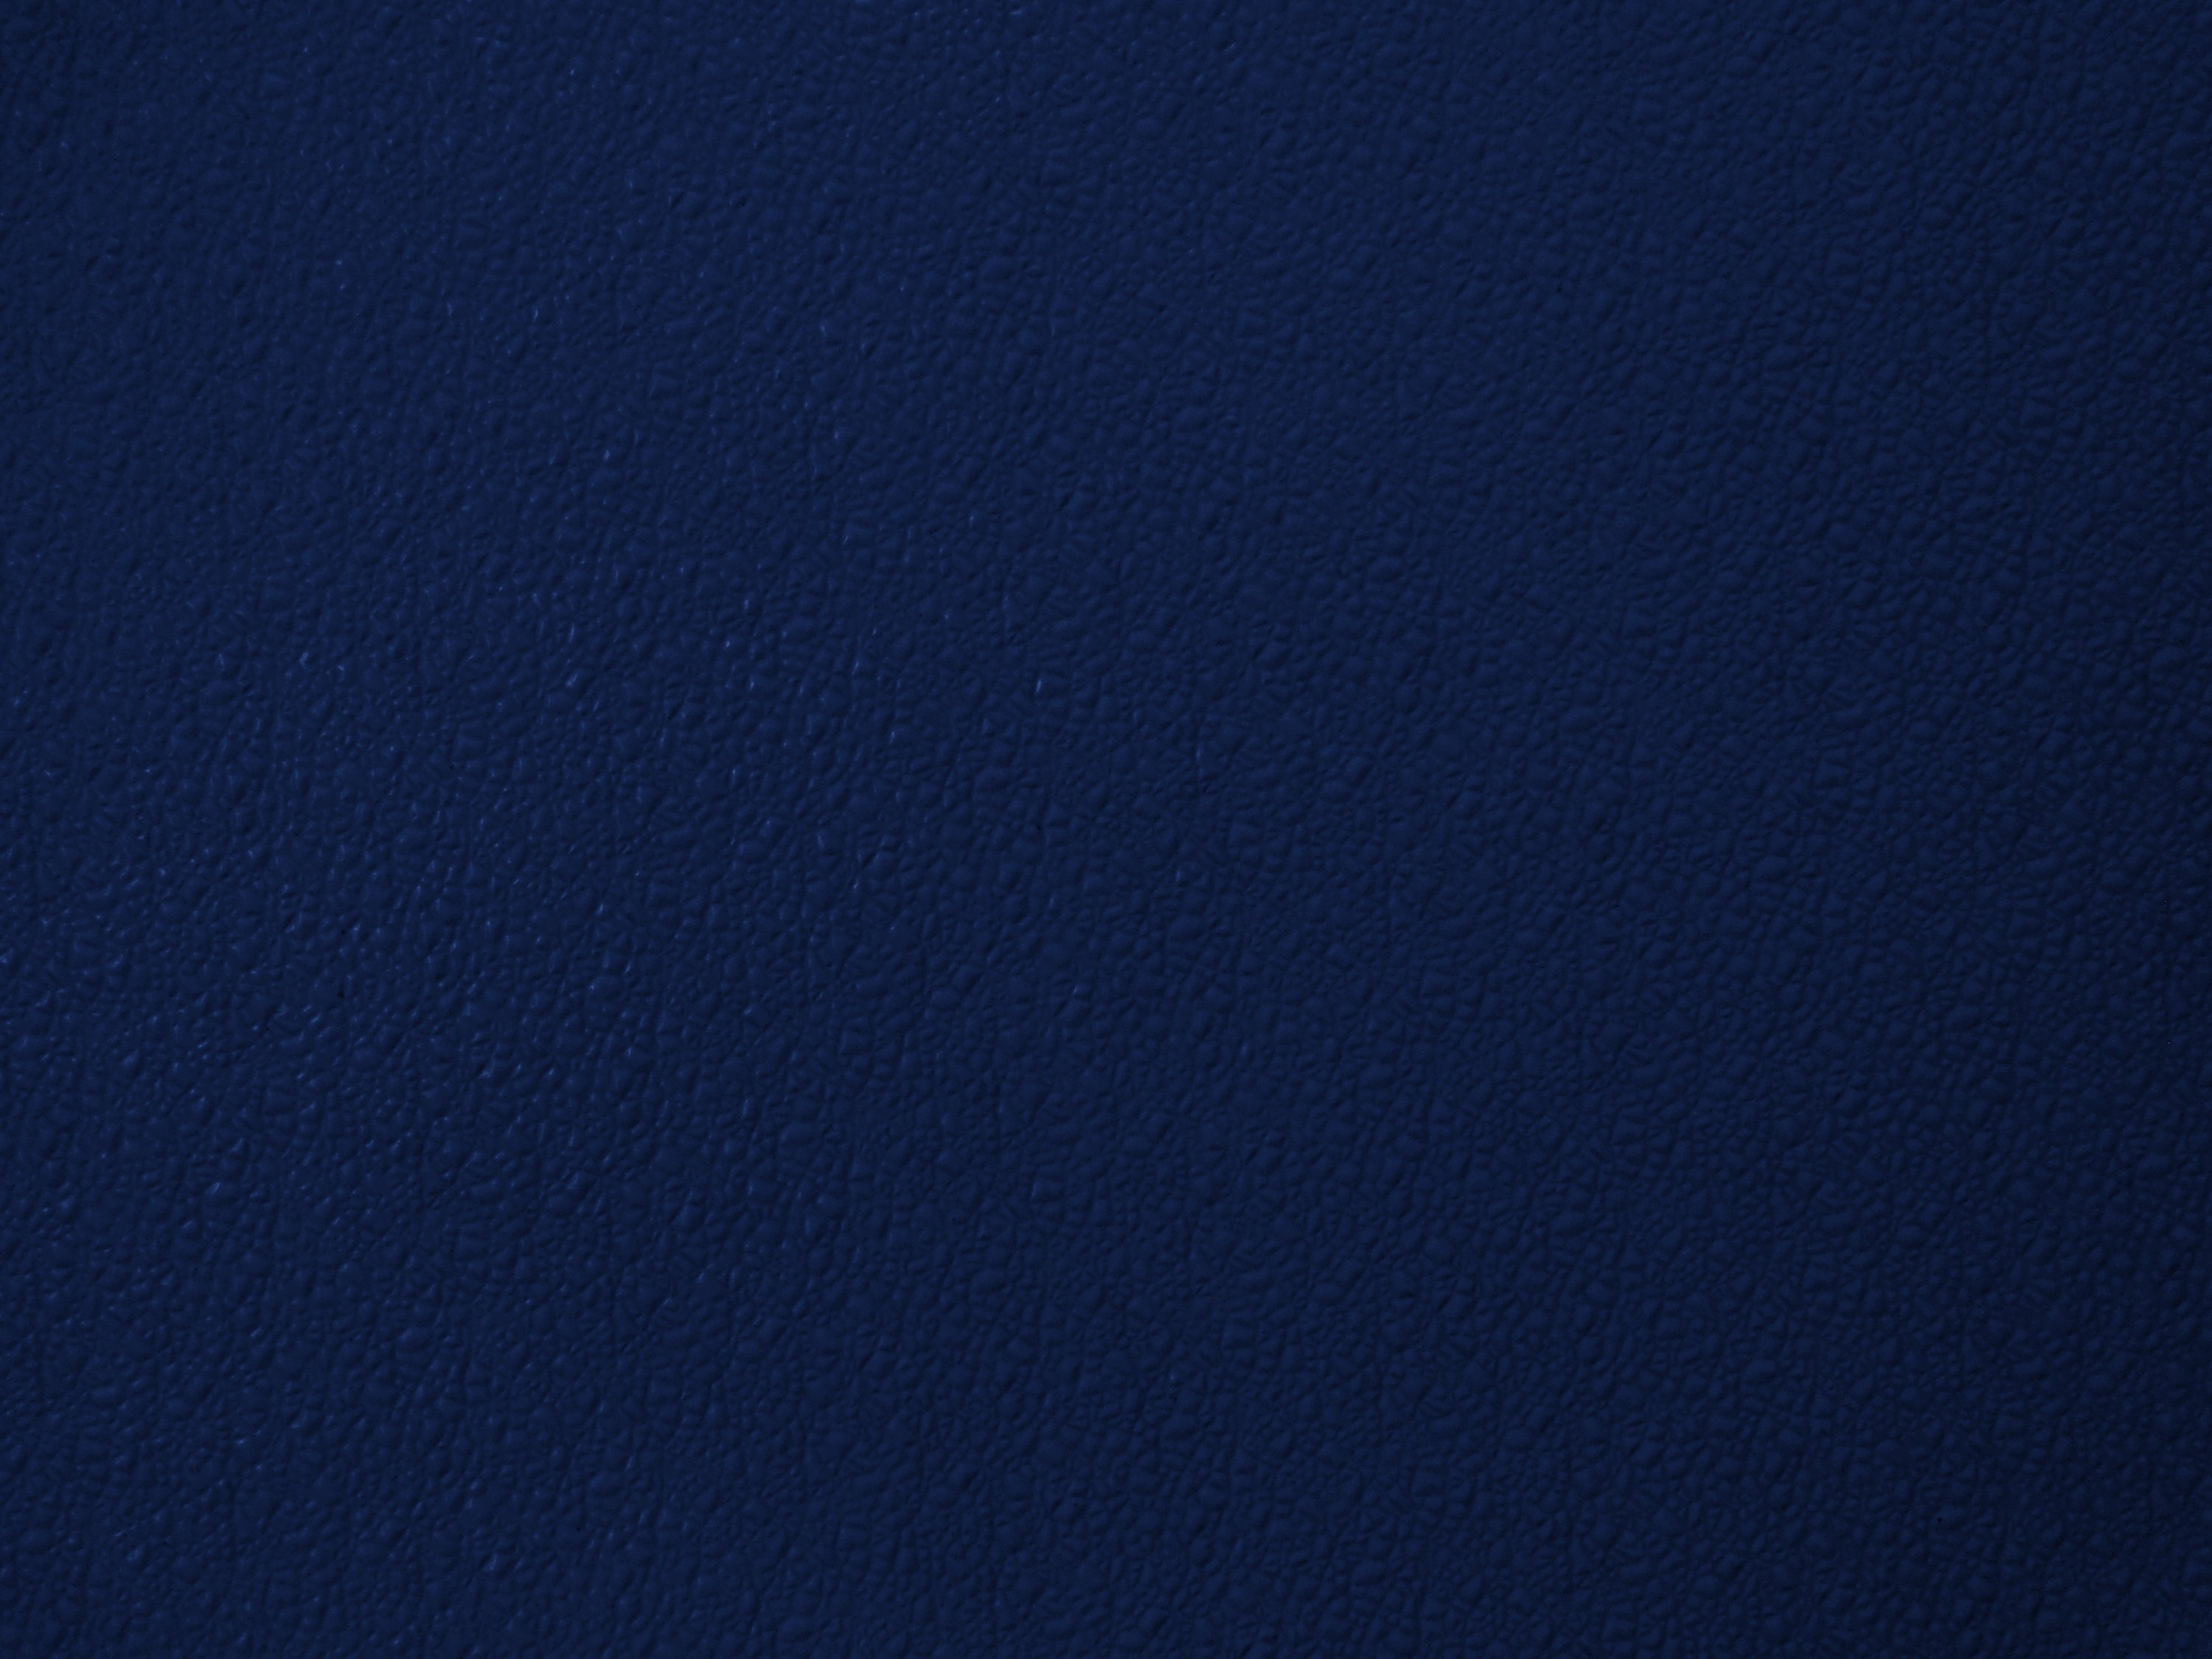 Navy Blue Texture Wallpaper